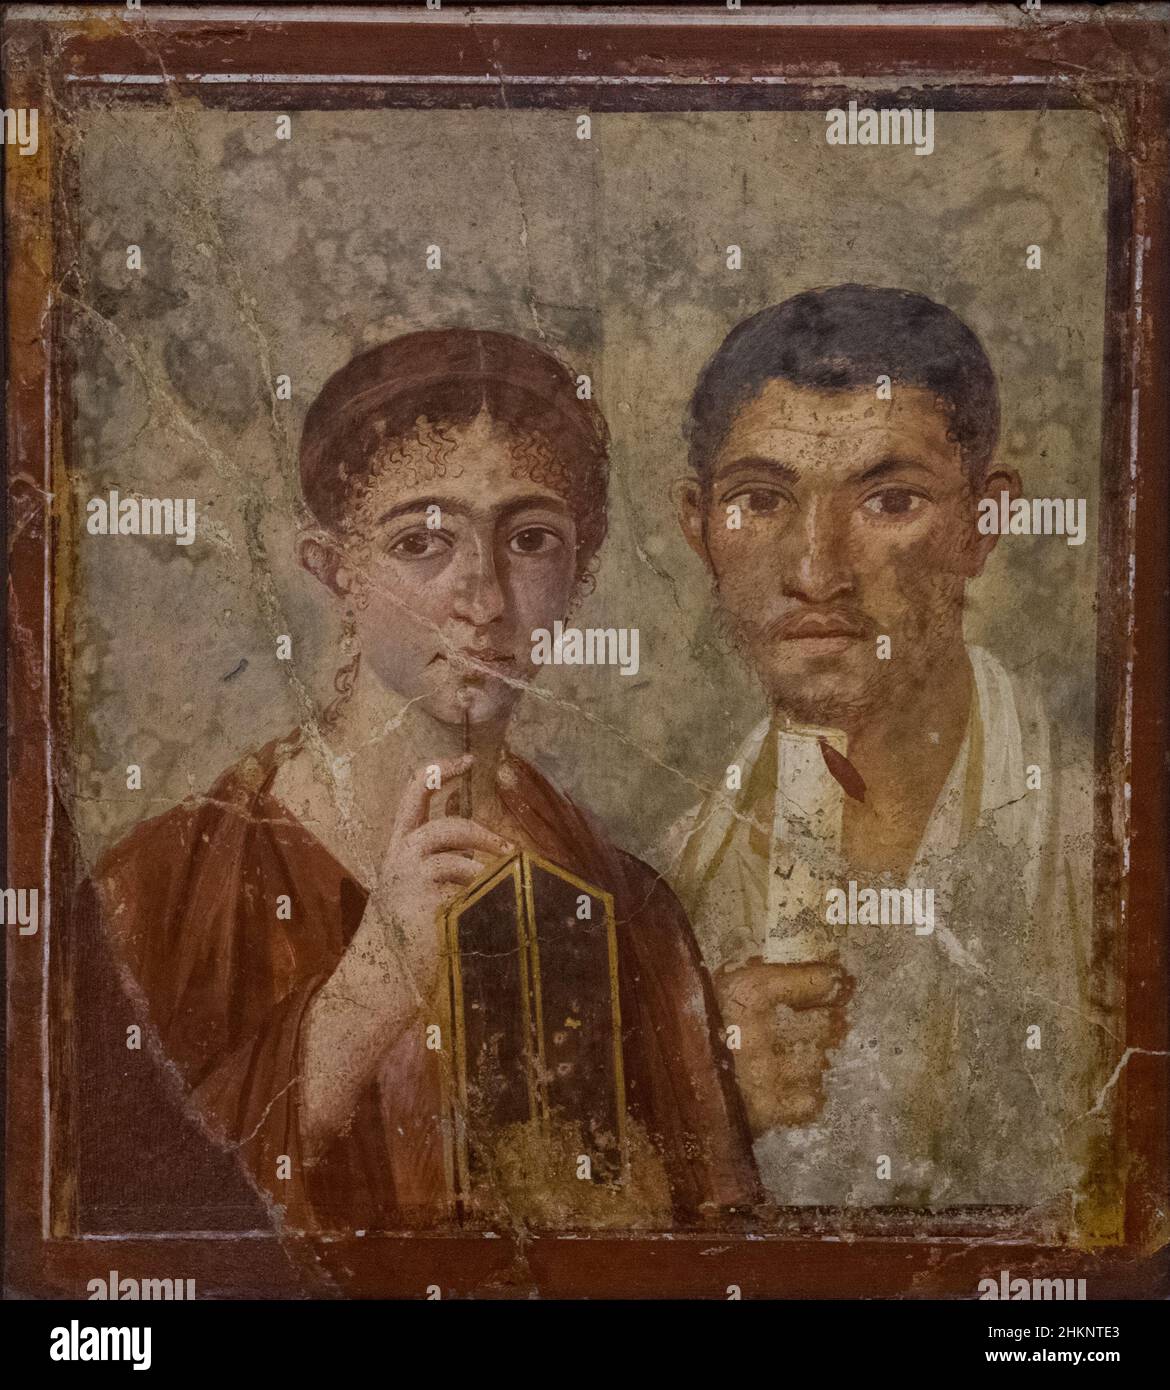 Mosaico encontrado en la antigua ciudad de Pompeya Foto de stock